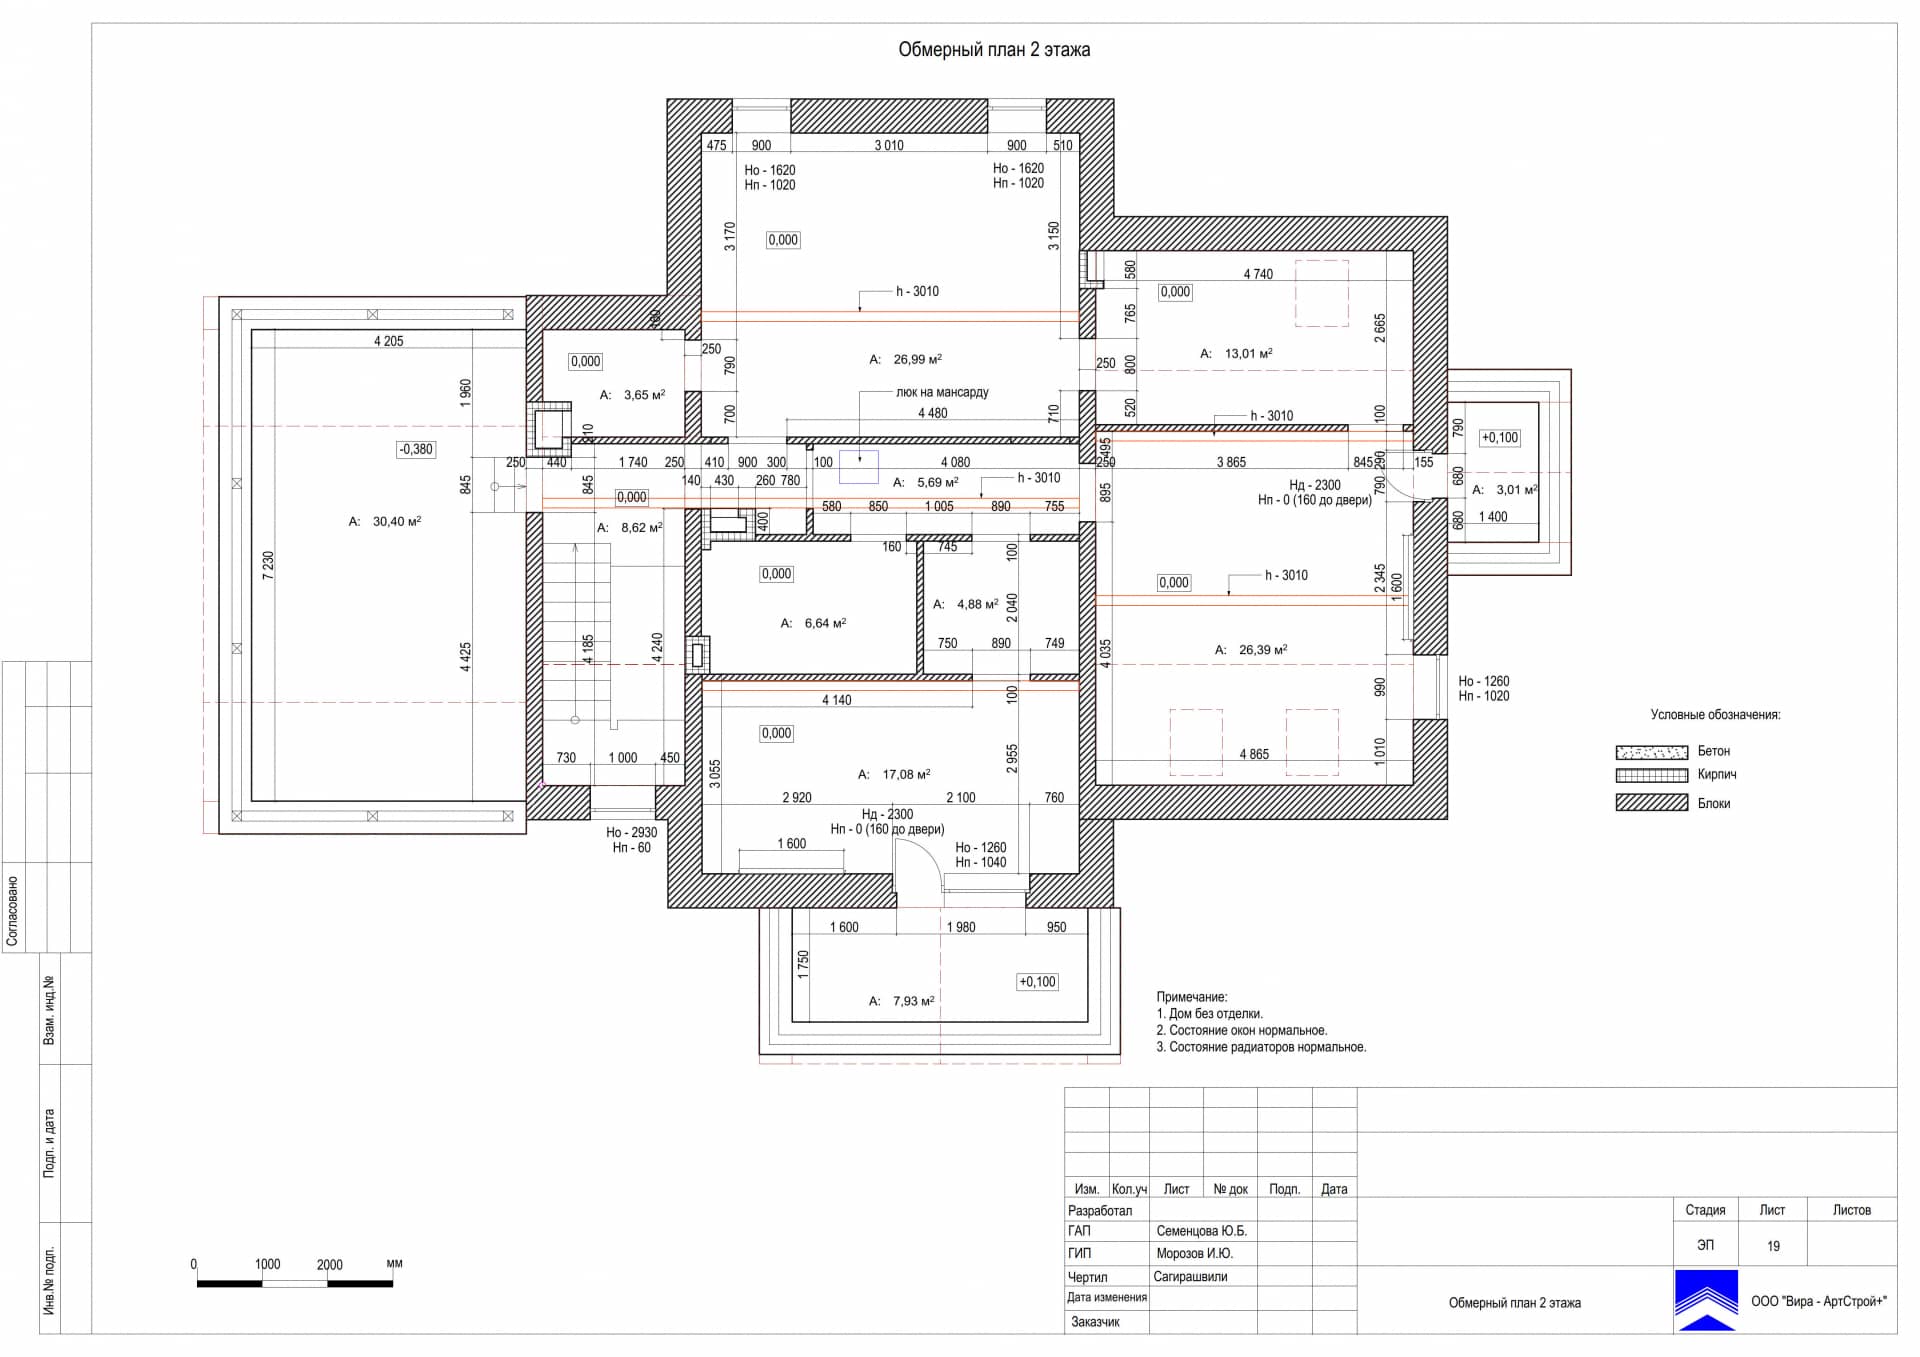 Обмерный план 2 этажа, дом 471 м² в КП «Сорочаны»